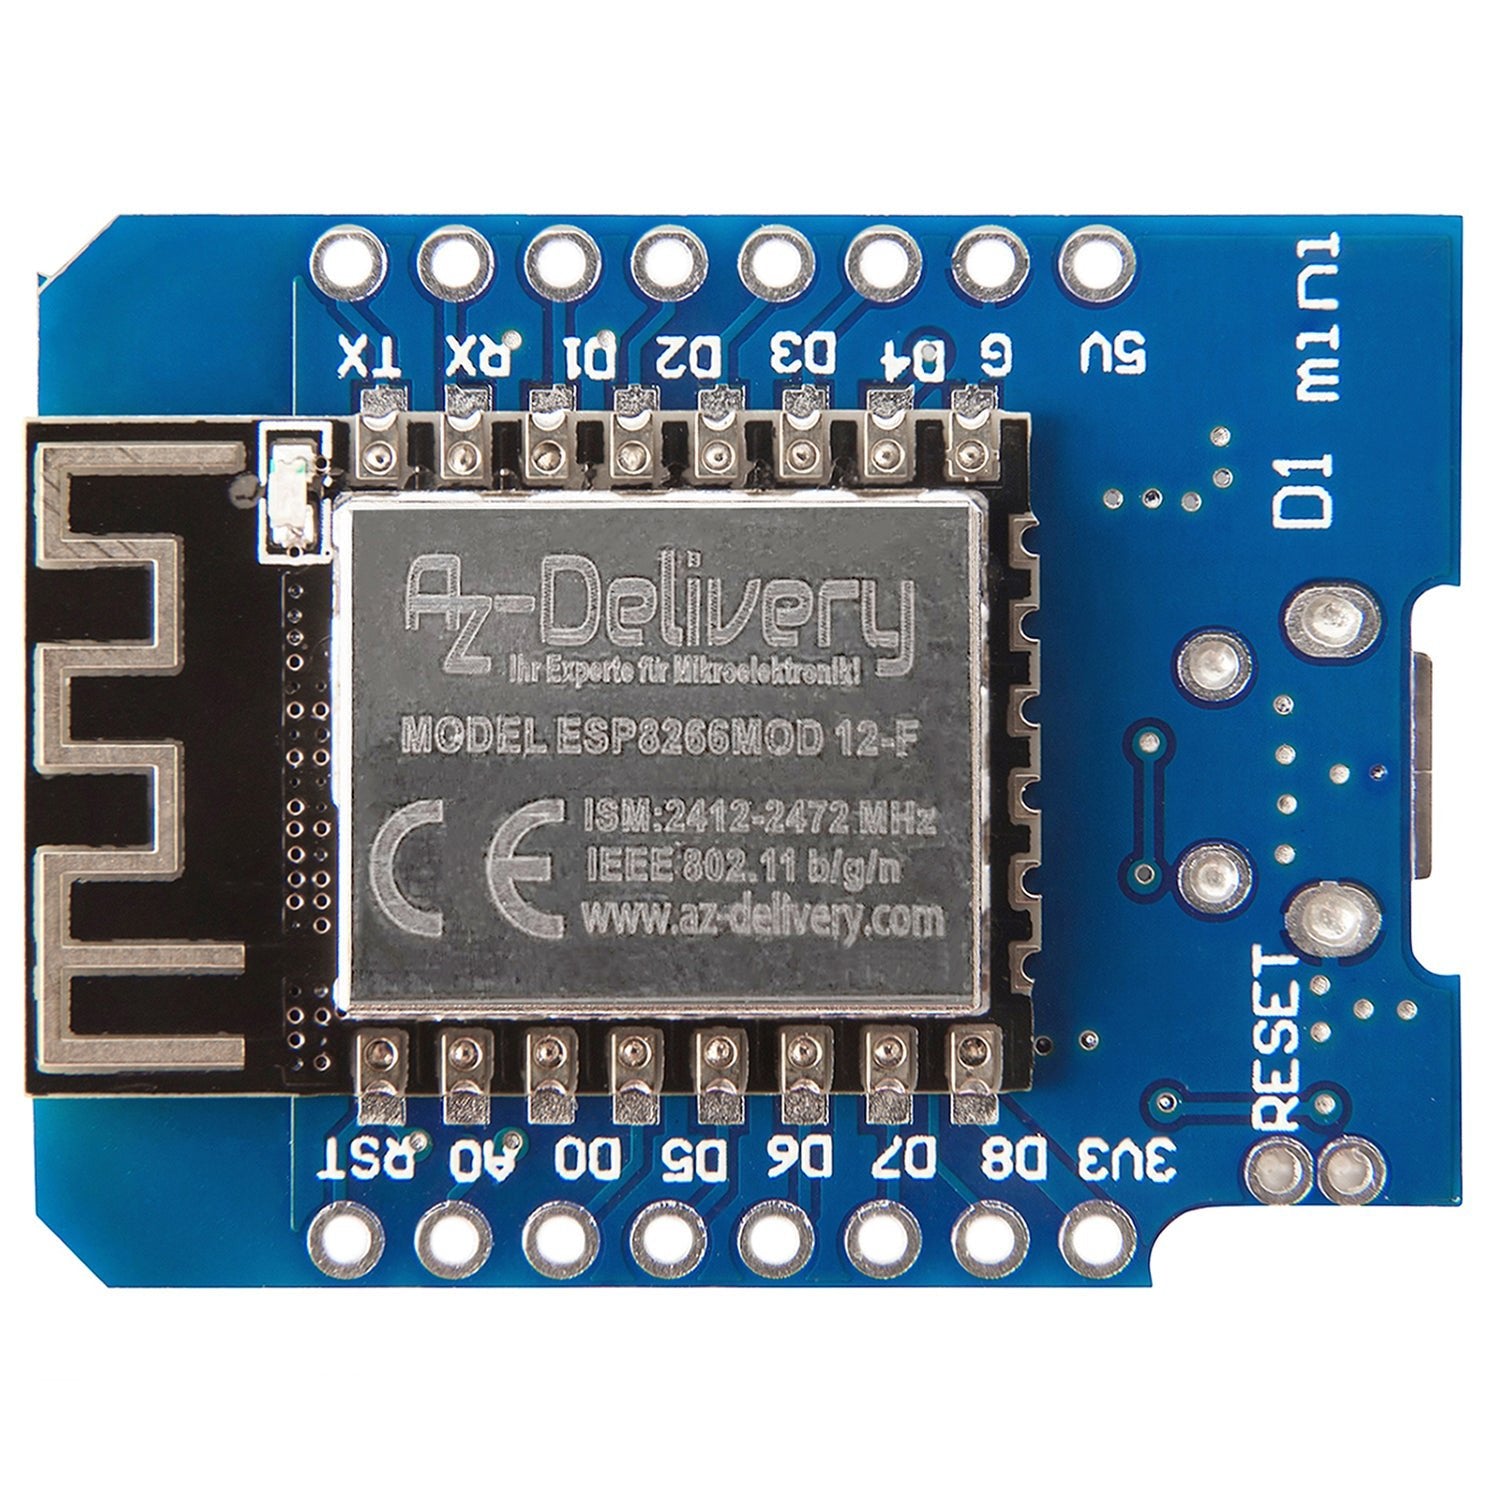 D1 Mini NodeMcu mit ESP8266-12F WLAN Modul kompatibel mit Arduino - AZ-Delivery